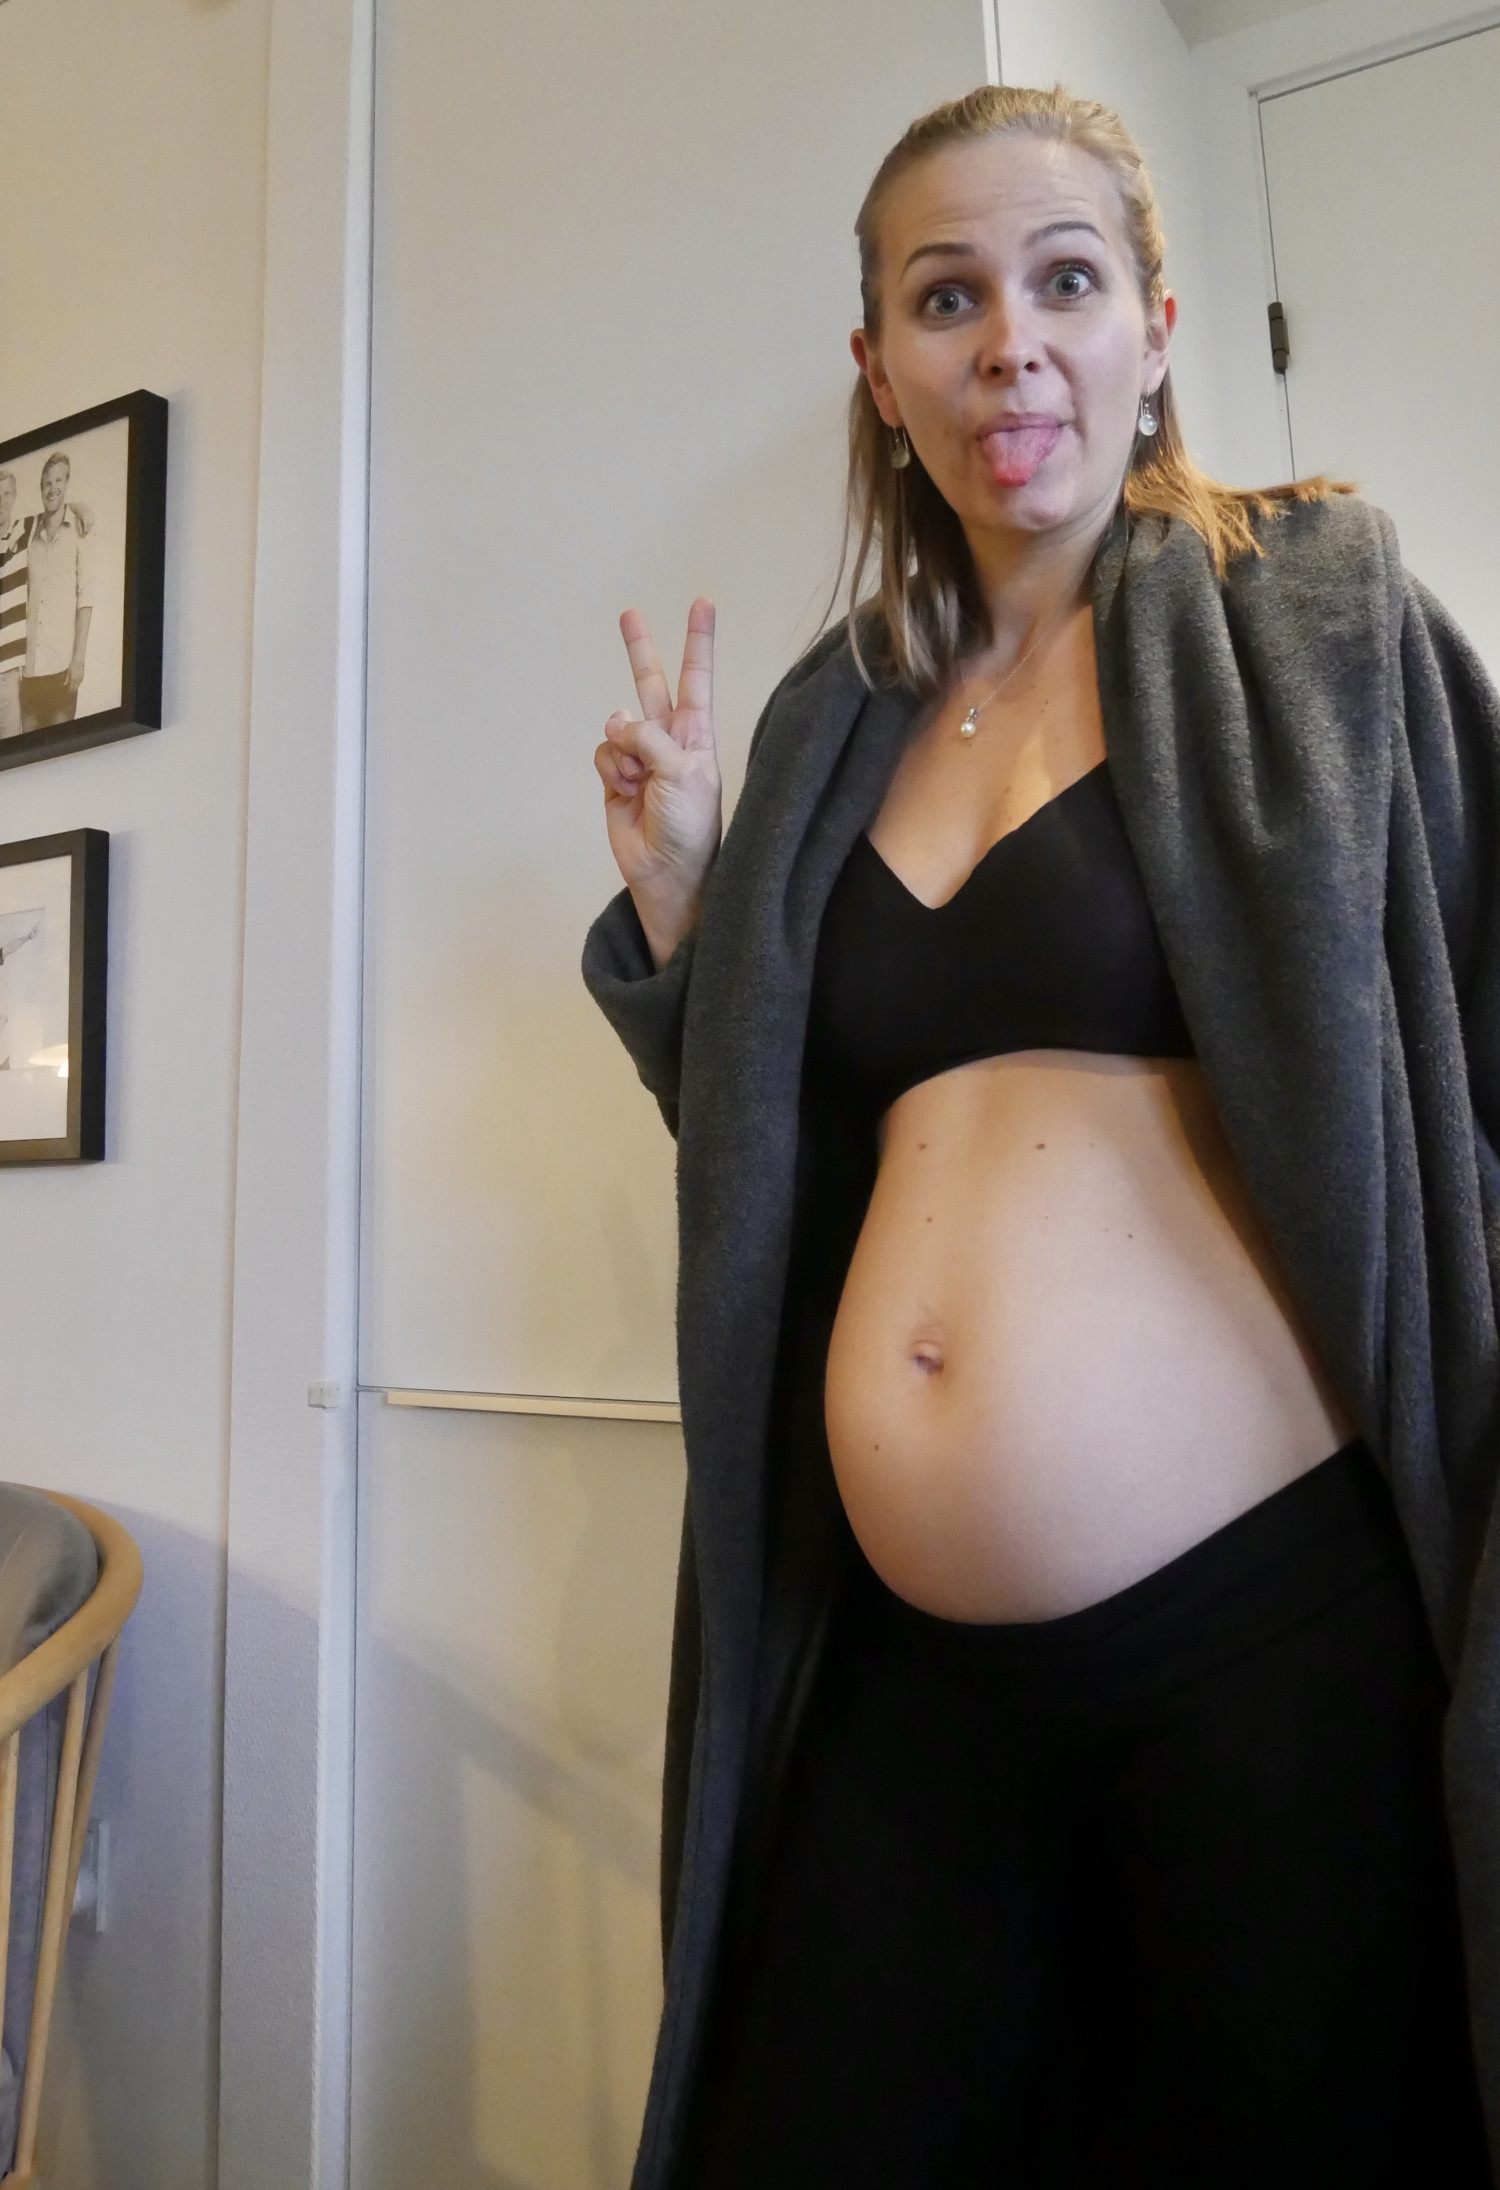 Uge gravid 3 Gravid uge